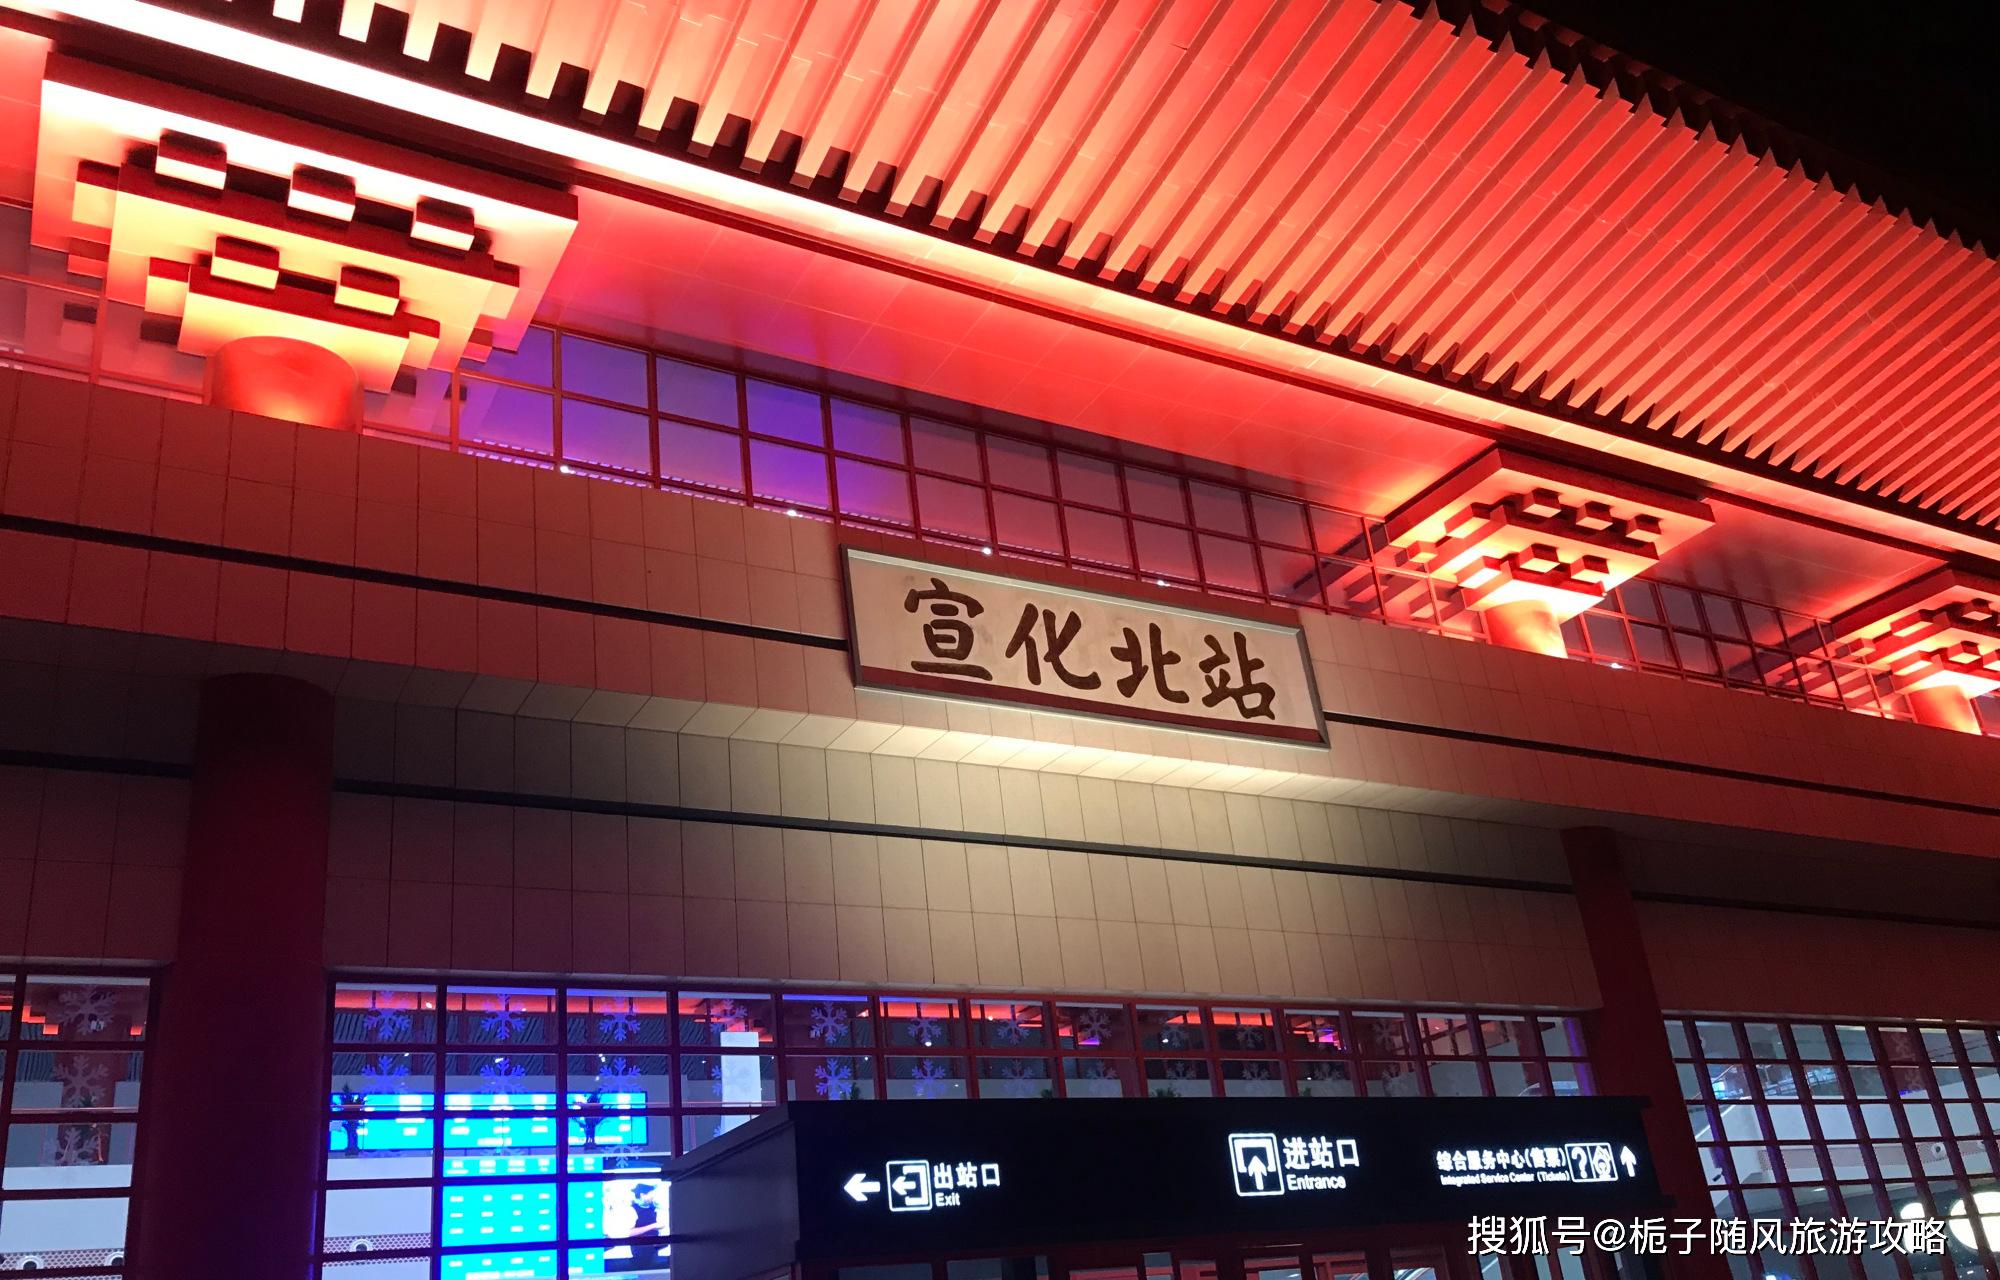 宣化北站 宣化北站(xuanhuabei railyway station)位于河北省张家口